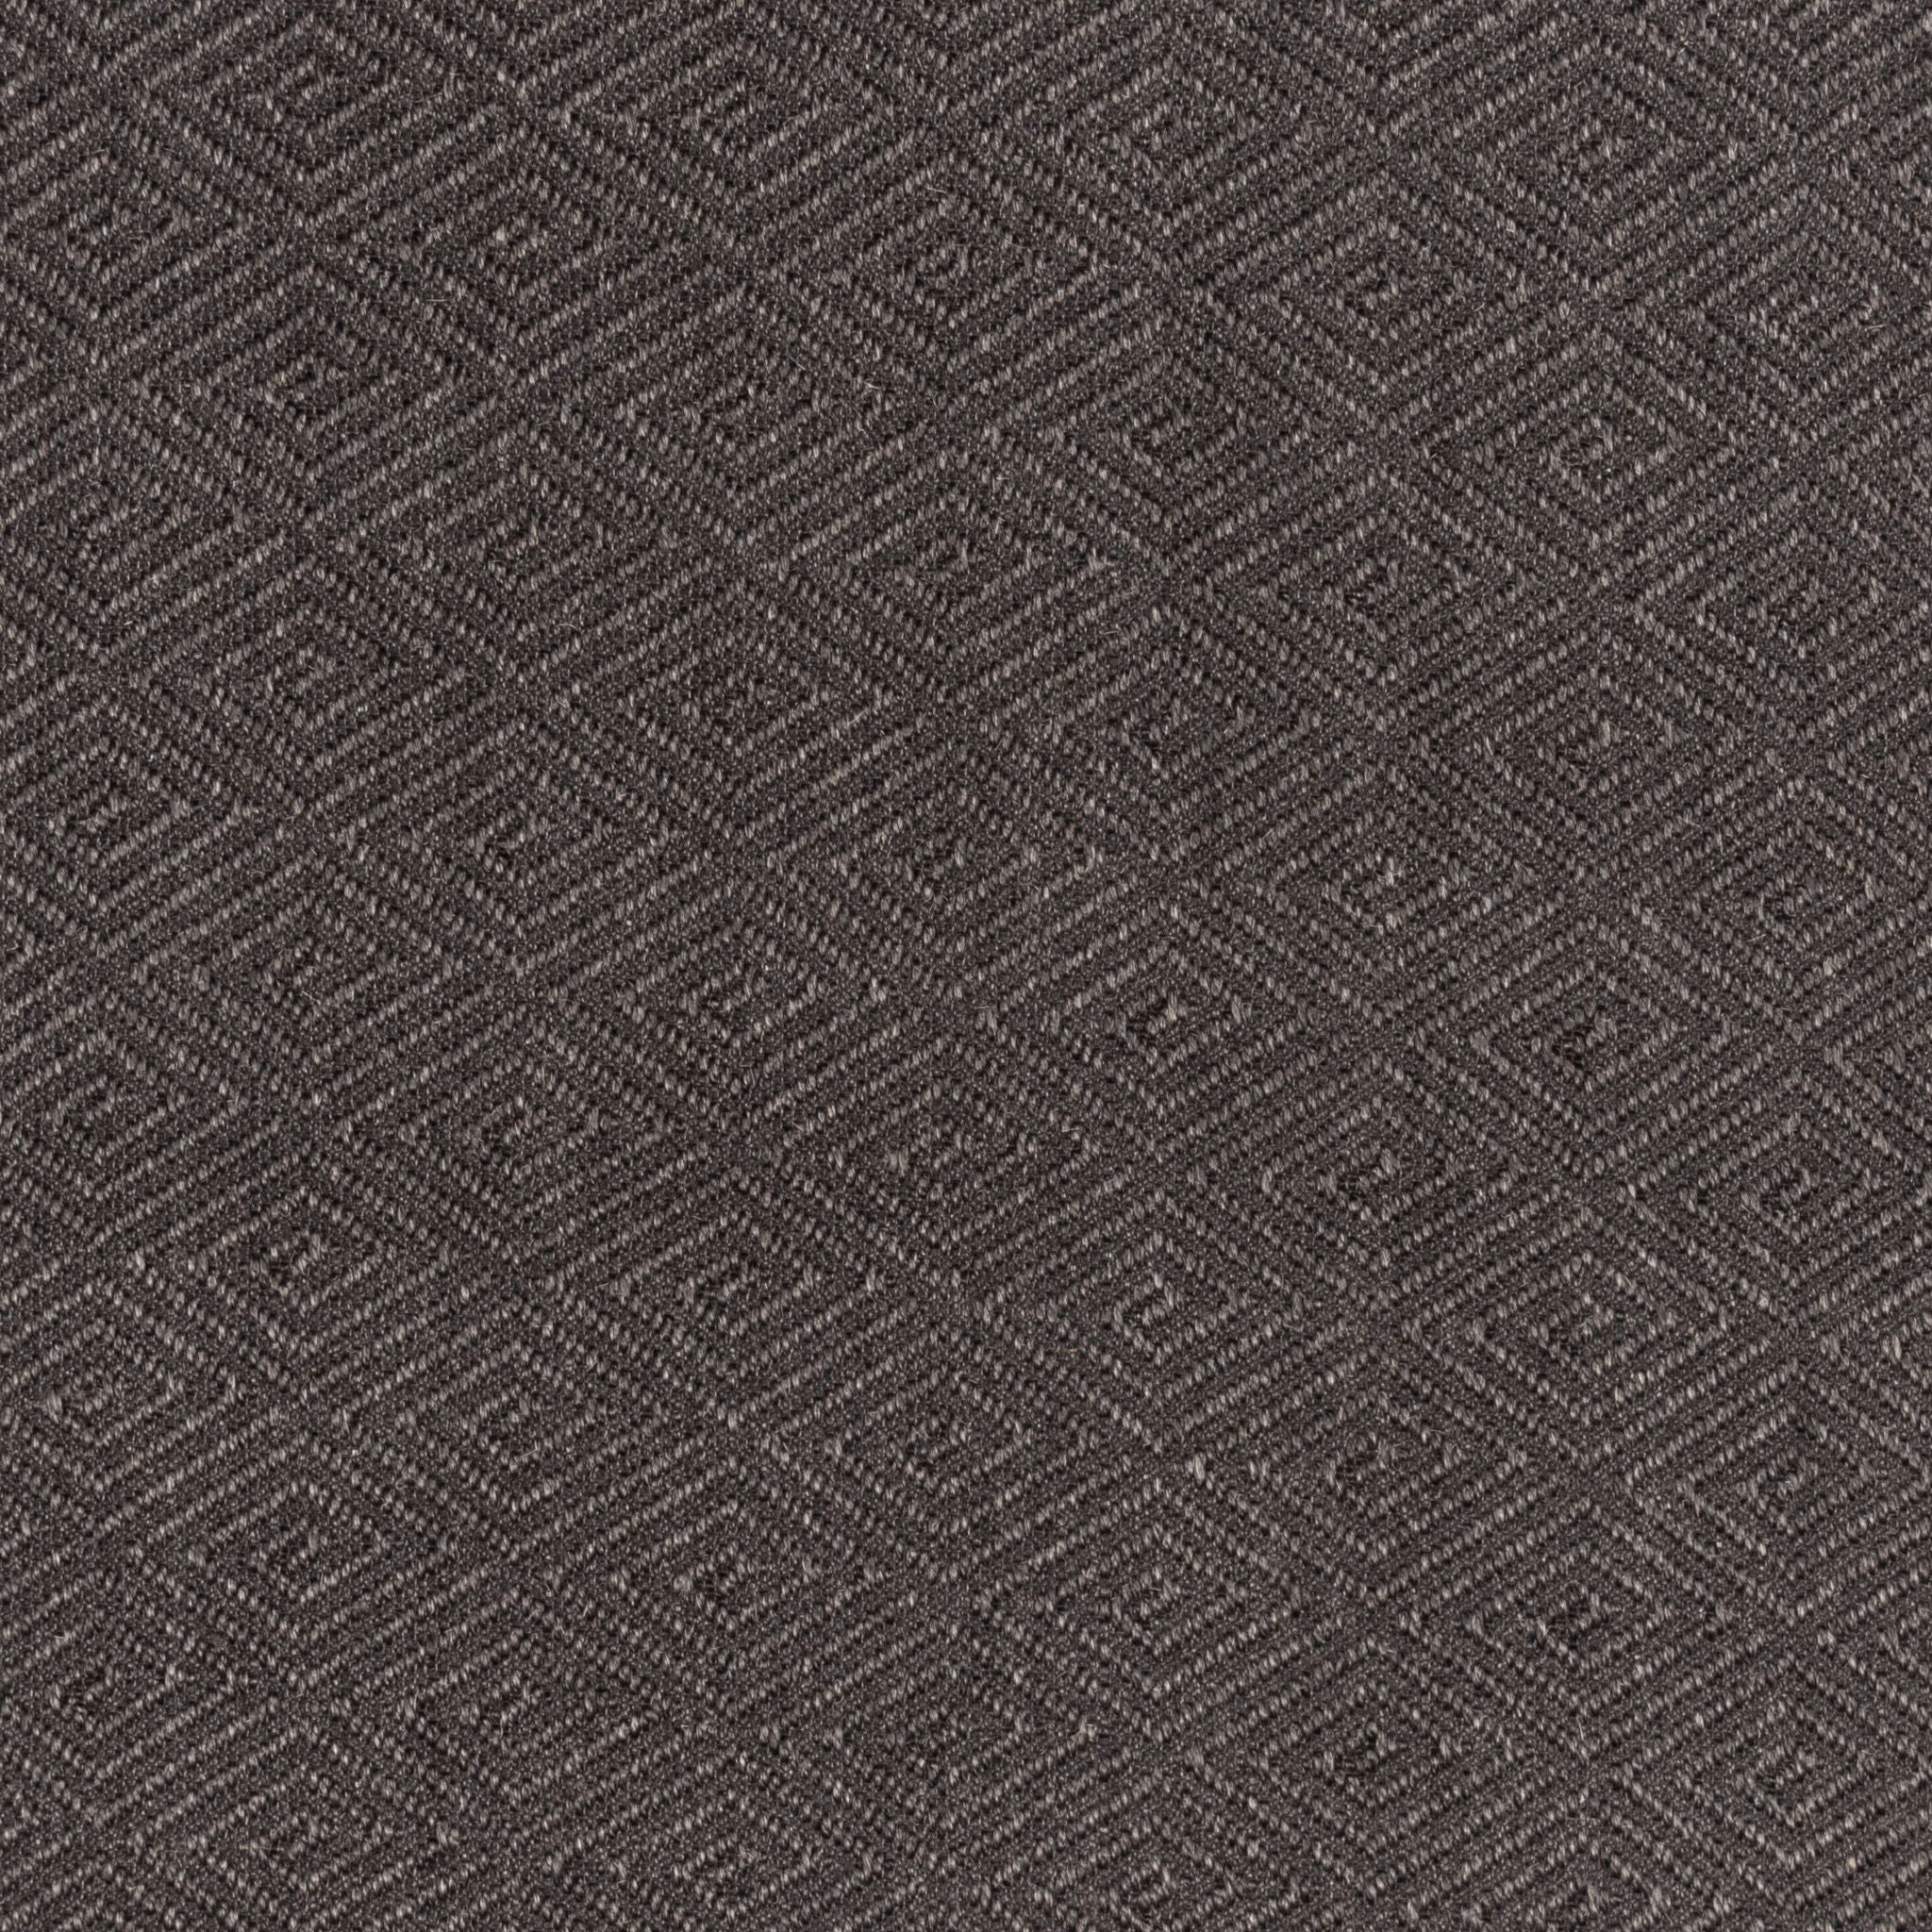 Granger Woven Carpet, Ebony Default Title